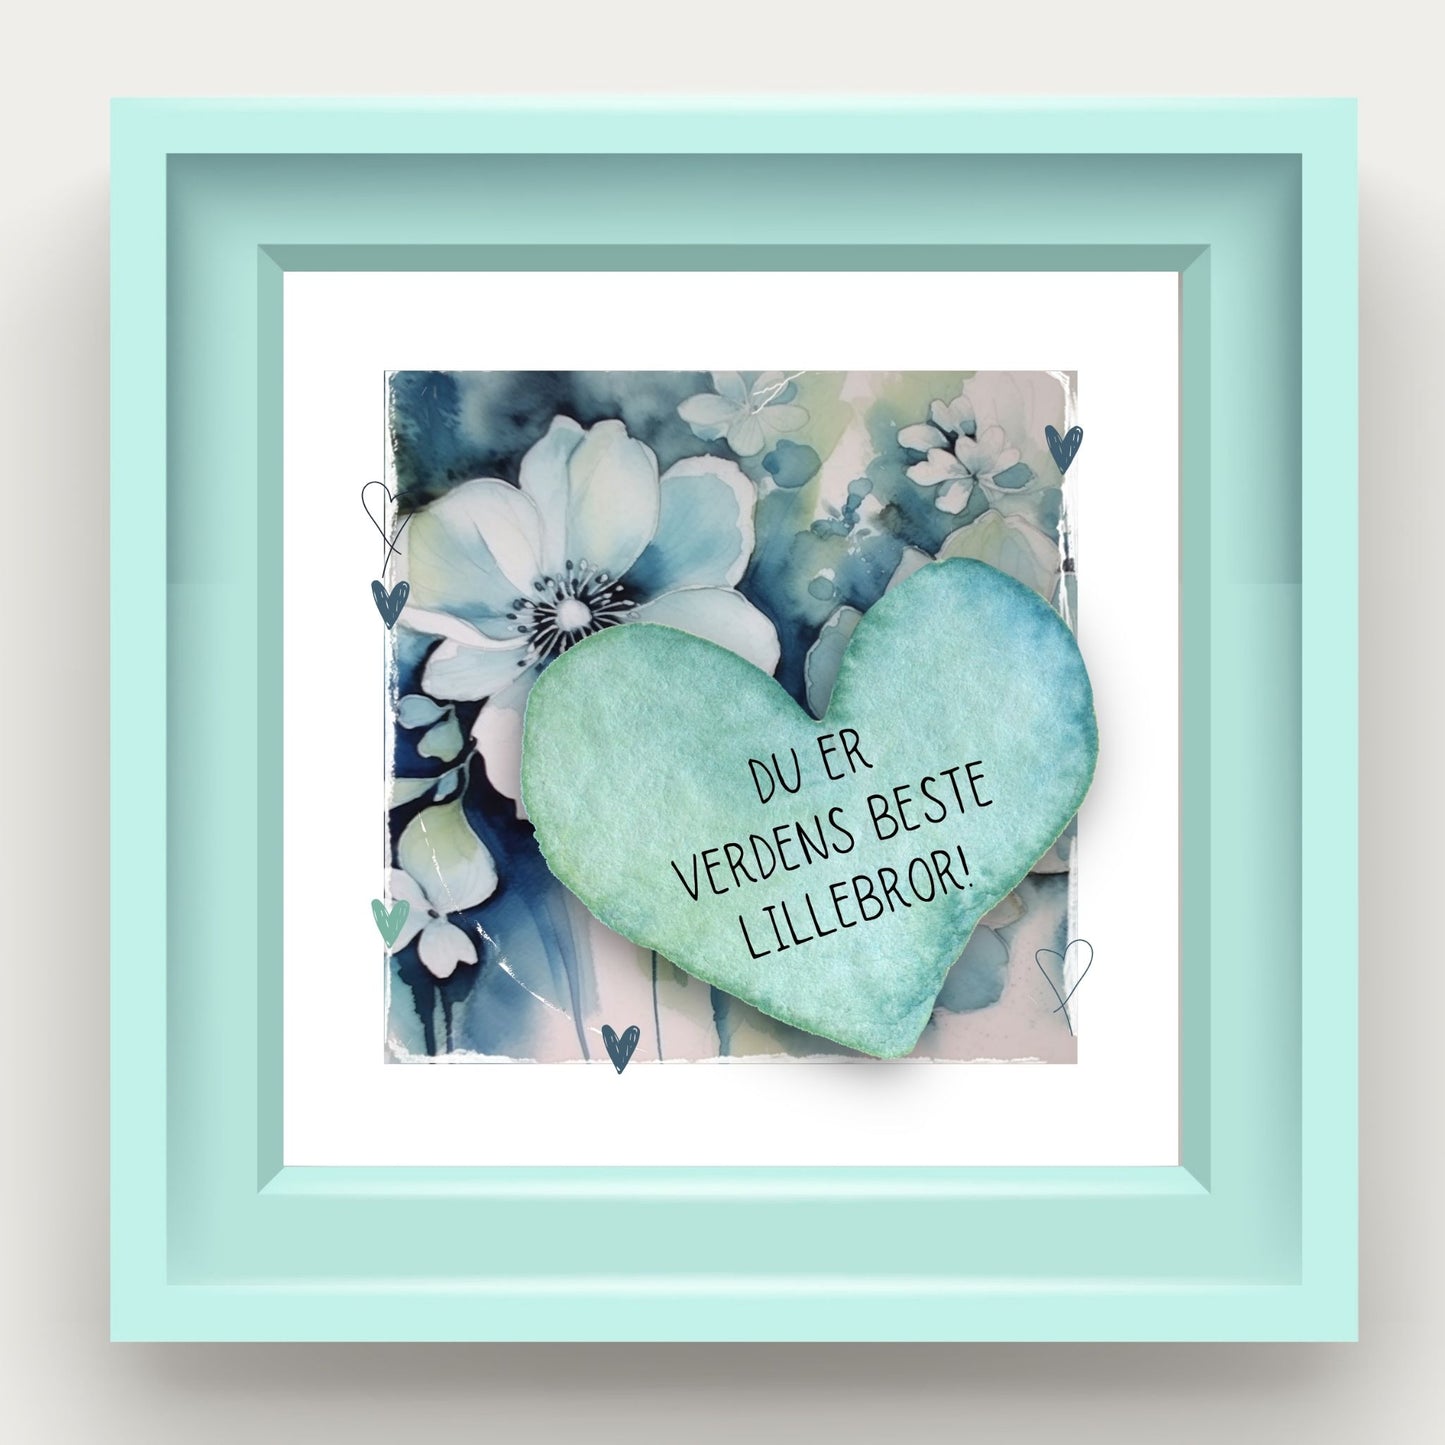 Grafisk plakat med et lyseblått hjerte påført tekst "Du er verdens beste lillebror!". Bagrunn med blomster i blåtoner. Illustrasjonen viser plakat i lyseblå ramme.